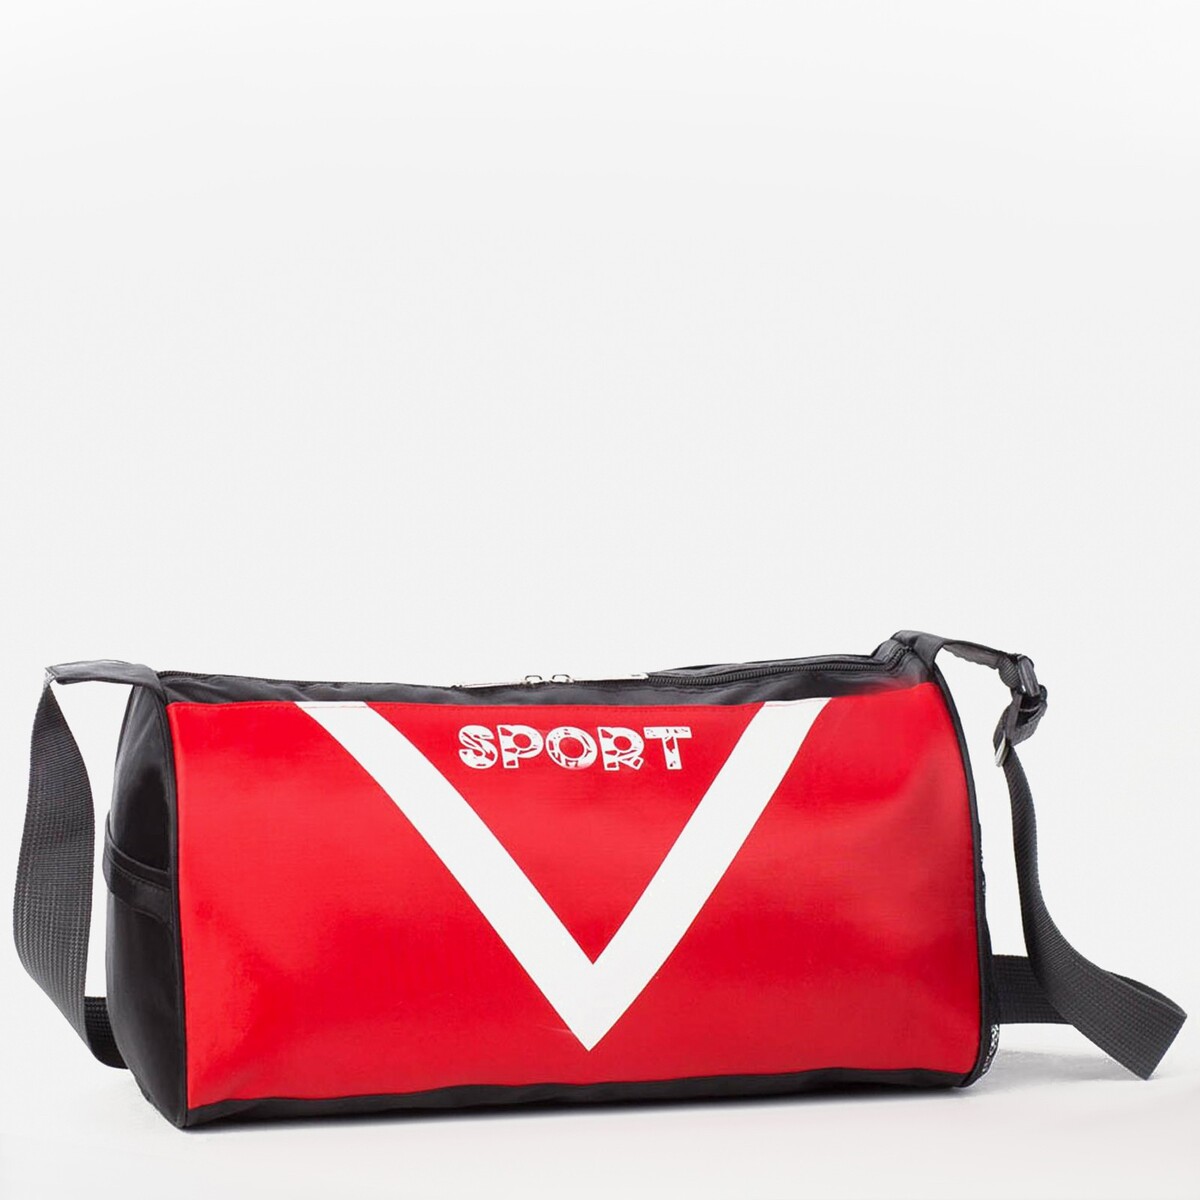 Сумка спортивная, отдел на молнии, боковая сетка, длинный ремень, цвет красный сумка спортивная отдел на молнии боковая сетка длинный ремень красный